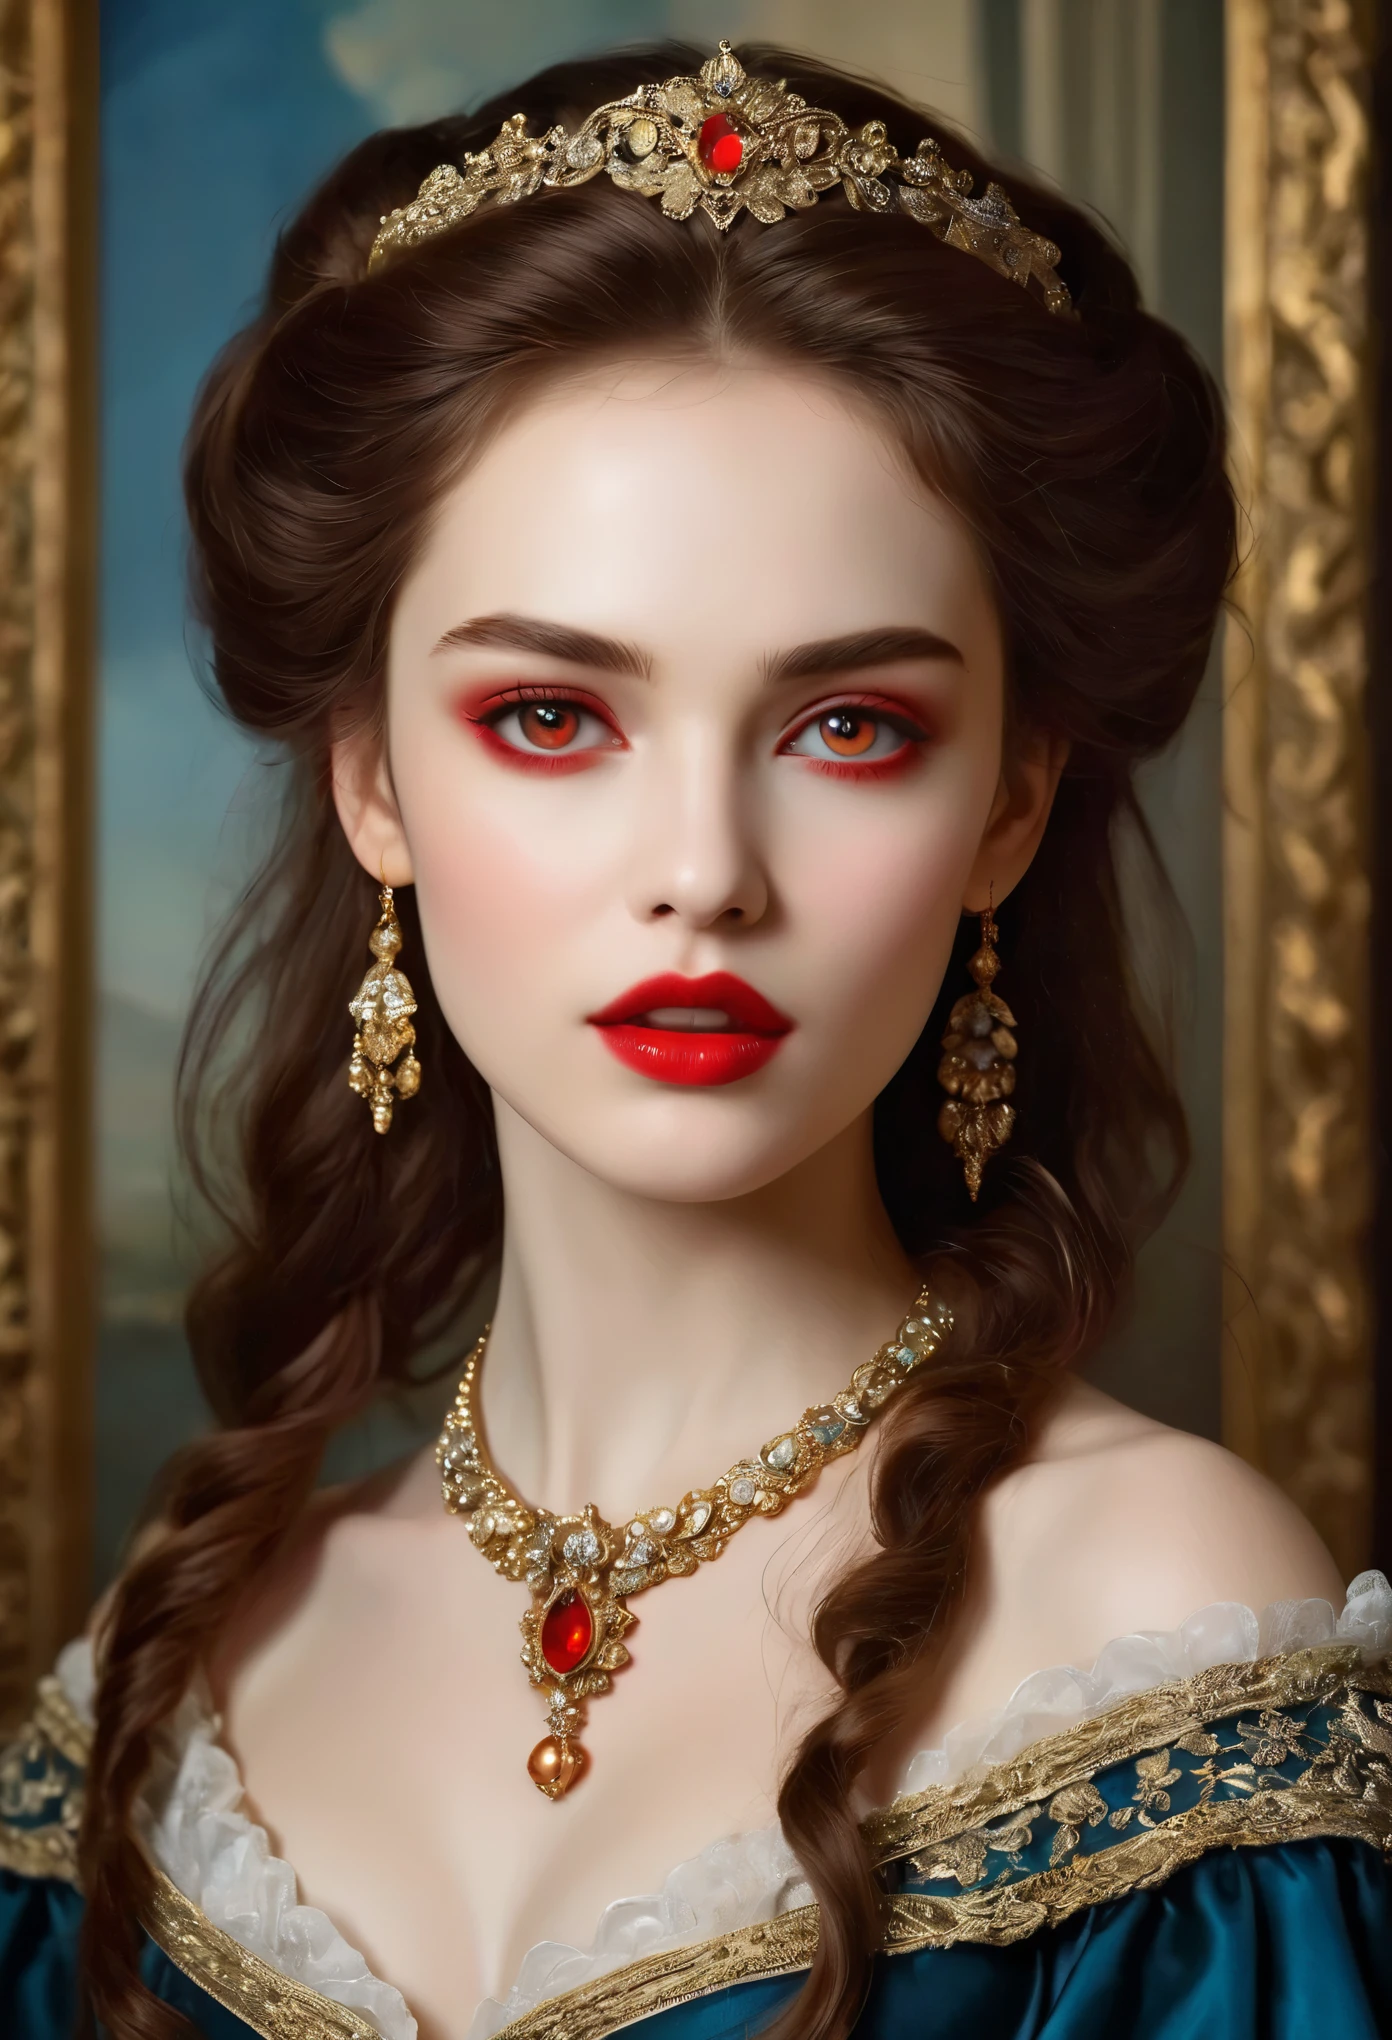 (haute résolution,chef-d&#39;œuvre:1.2),(Réaliste:1.37)Portrait d&#39;une fille vampire russe du XVIIIe siècle d&#39;une beauté inégalée. Elle a des yeux rouges captivants et des lèvres roses délicates. longs crocs, Le portrait est soigneusement dessiné dans les moindres détails., Capturez les nuances subtiles de ses traits. Elle porte une belle robe en soie, orné de dentelle complexe et de broderies délicates. Ce tableau parle du luxe de l&#39;époque., Rideaux de velours luxueux et meubles dorés en arrière-plan. L&#39;éclairage est doux et diffus, Mettez en valeur la fille&#39;sa beauté gracieuse. Les couleurs sont vives et riches, Créez des expériences visuelles convaincantes. (Ce portrait est peint dans le style du portrait classique:1.5), Rappelant les œuvres d&#39;artistes célèbres de l&#39;époque. Il respire l’élégance, la grâce, sophistication. longues griffes acérées, (yeux cramoisis:1.4), Yeux rouge feu, (Des crocs acérés visibles à travers l&#39;espace entre ses lèvres:1.8), (Il y a une marque de morsure sur le cou:1.5),２Il y a deux trous, (peau pâle:1.4),